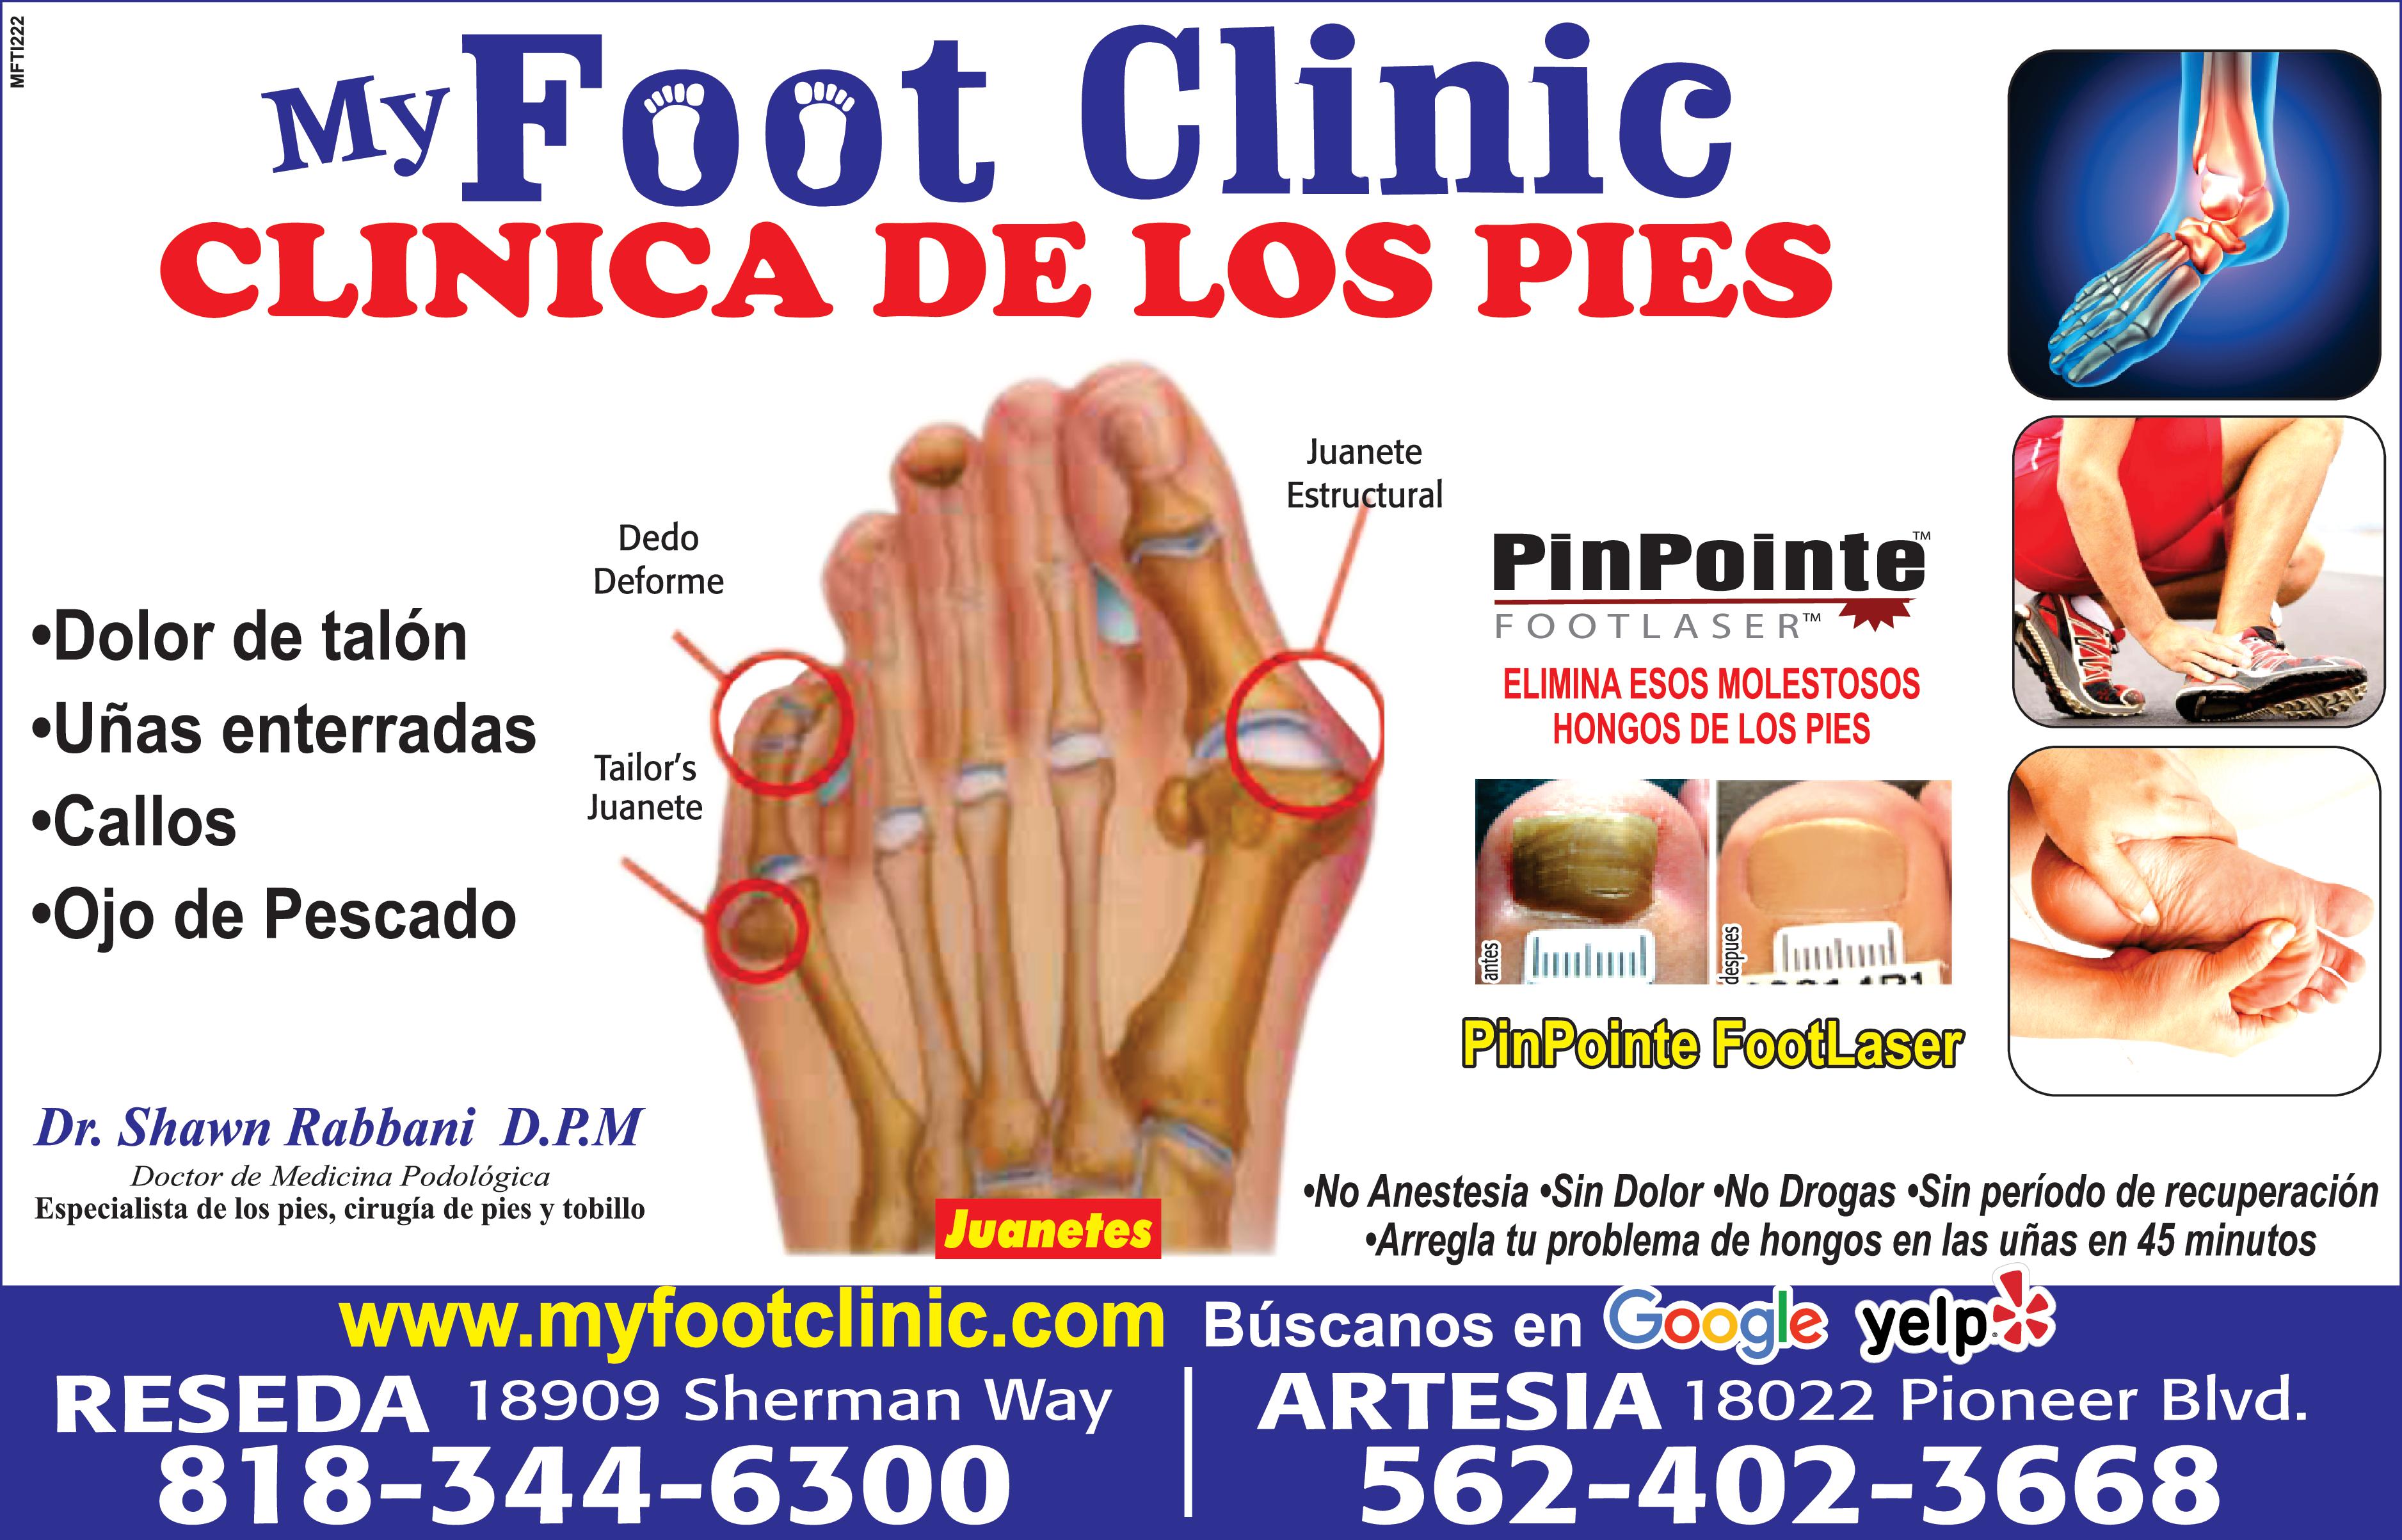 MFTI222 My Foot Clinic CLINICA DE LOS PIES Dolor de talón Dedo Deforme Uñas enterradas Callos Ojo de Pescado Tailor